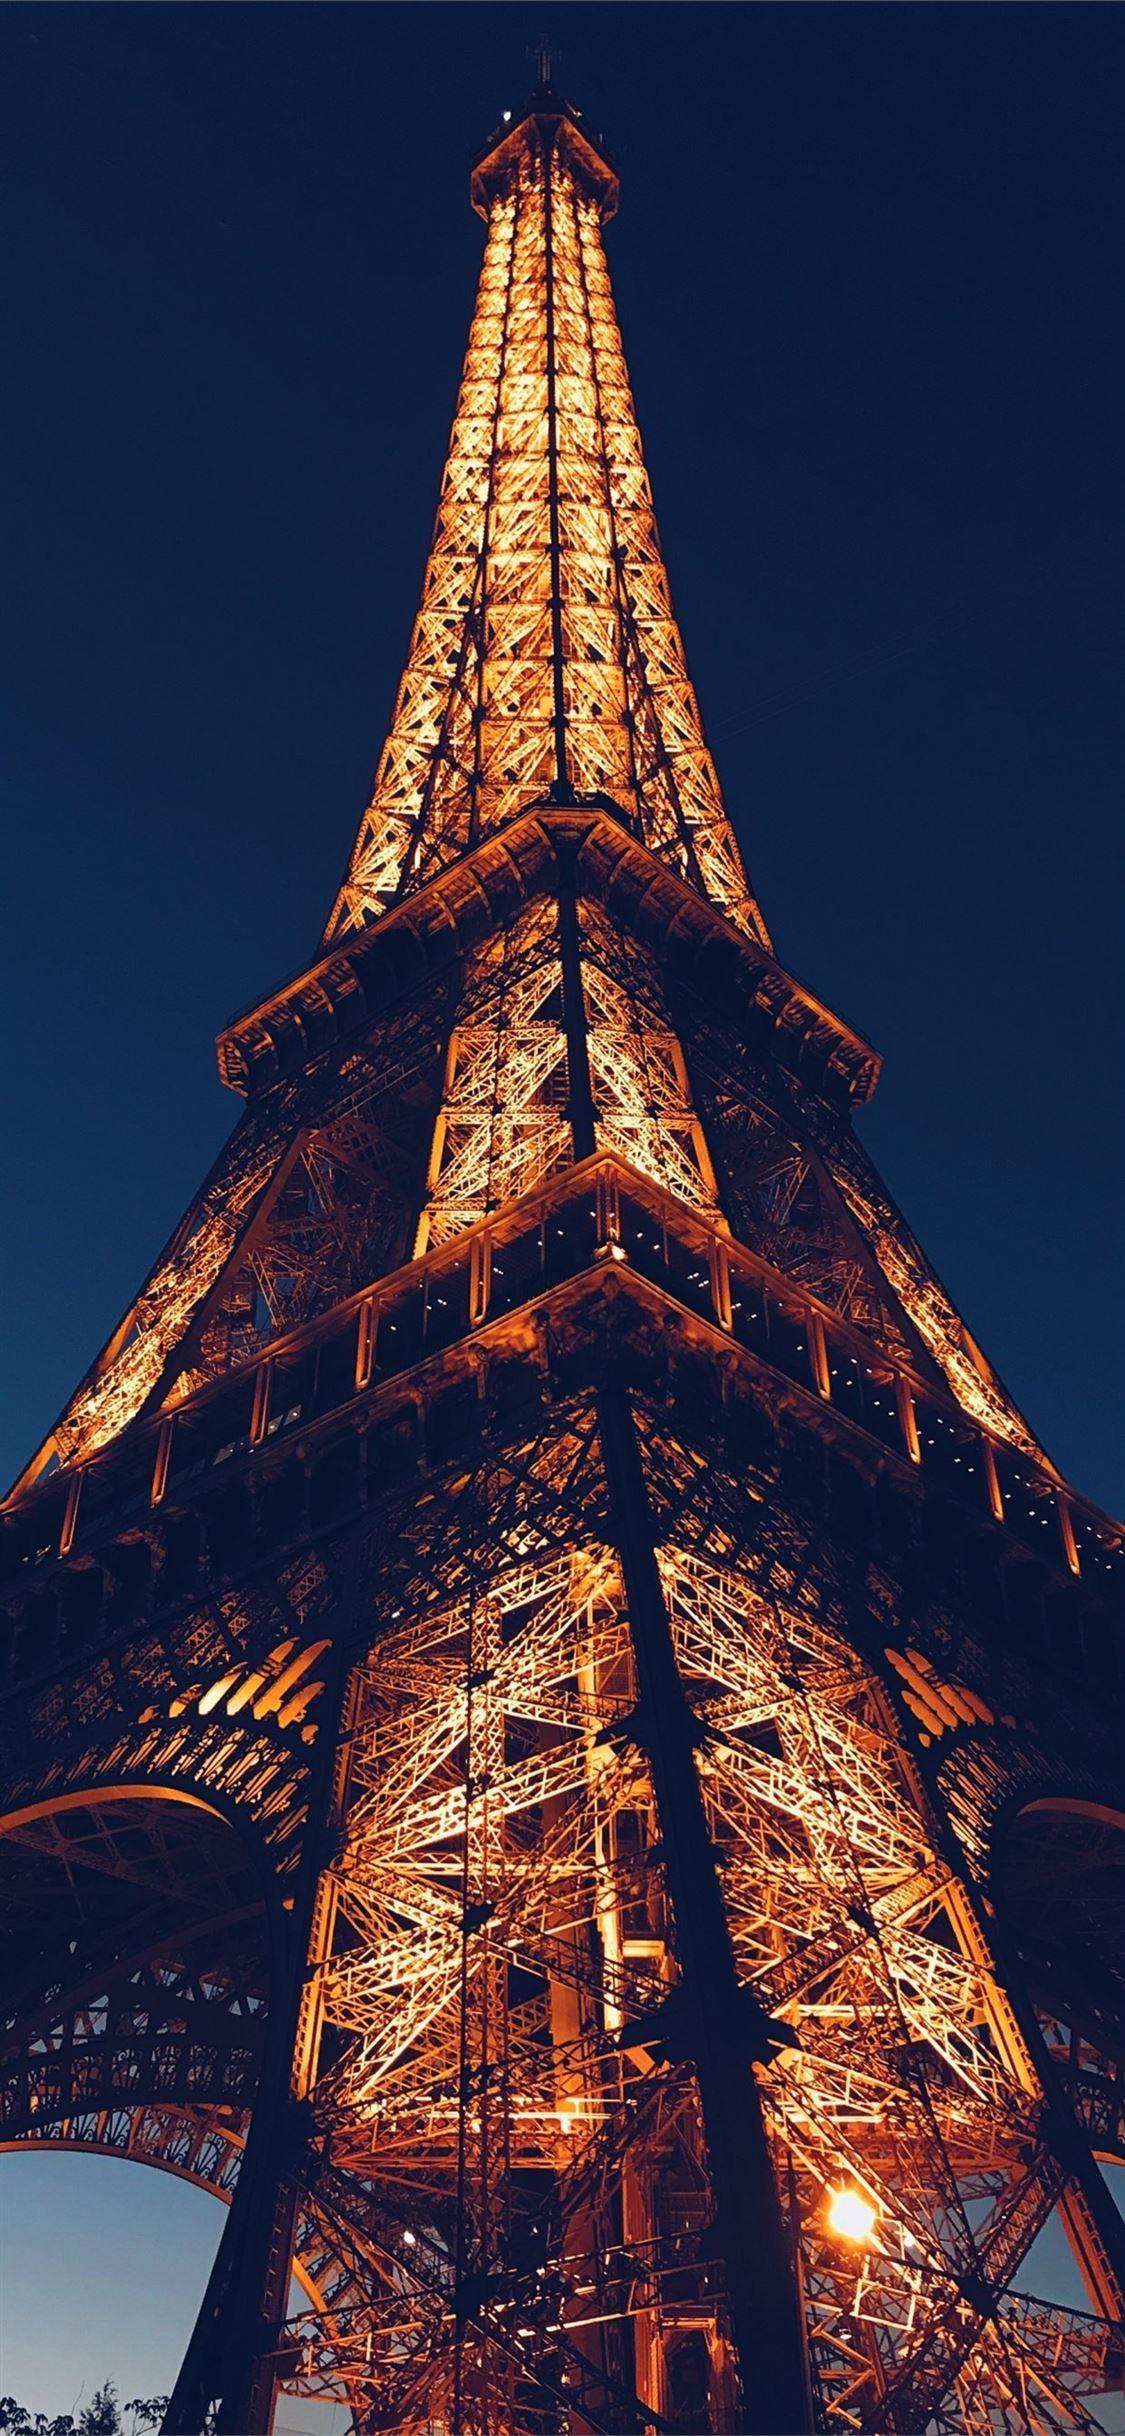 Hình nền điện thoại tháp Eiffel: Tại sao không tô điểm cho chiếc điện thoại của bạn với hình nền tháp Eiffel đầy mê hoặc? Bạn sẽ cảm thấy như đang đi du lịch tới thành phố tình yêu mỗi khi mở màn hình điện thoại. Hãy trang trí điện thoại của bạn với hình ảnh tuyệt đẹp này ngay hôm nay.